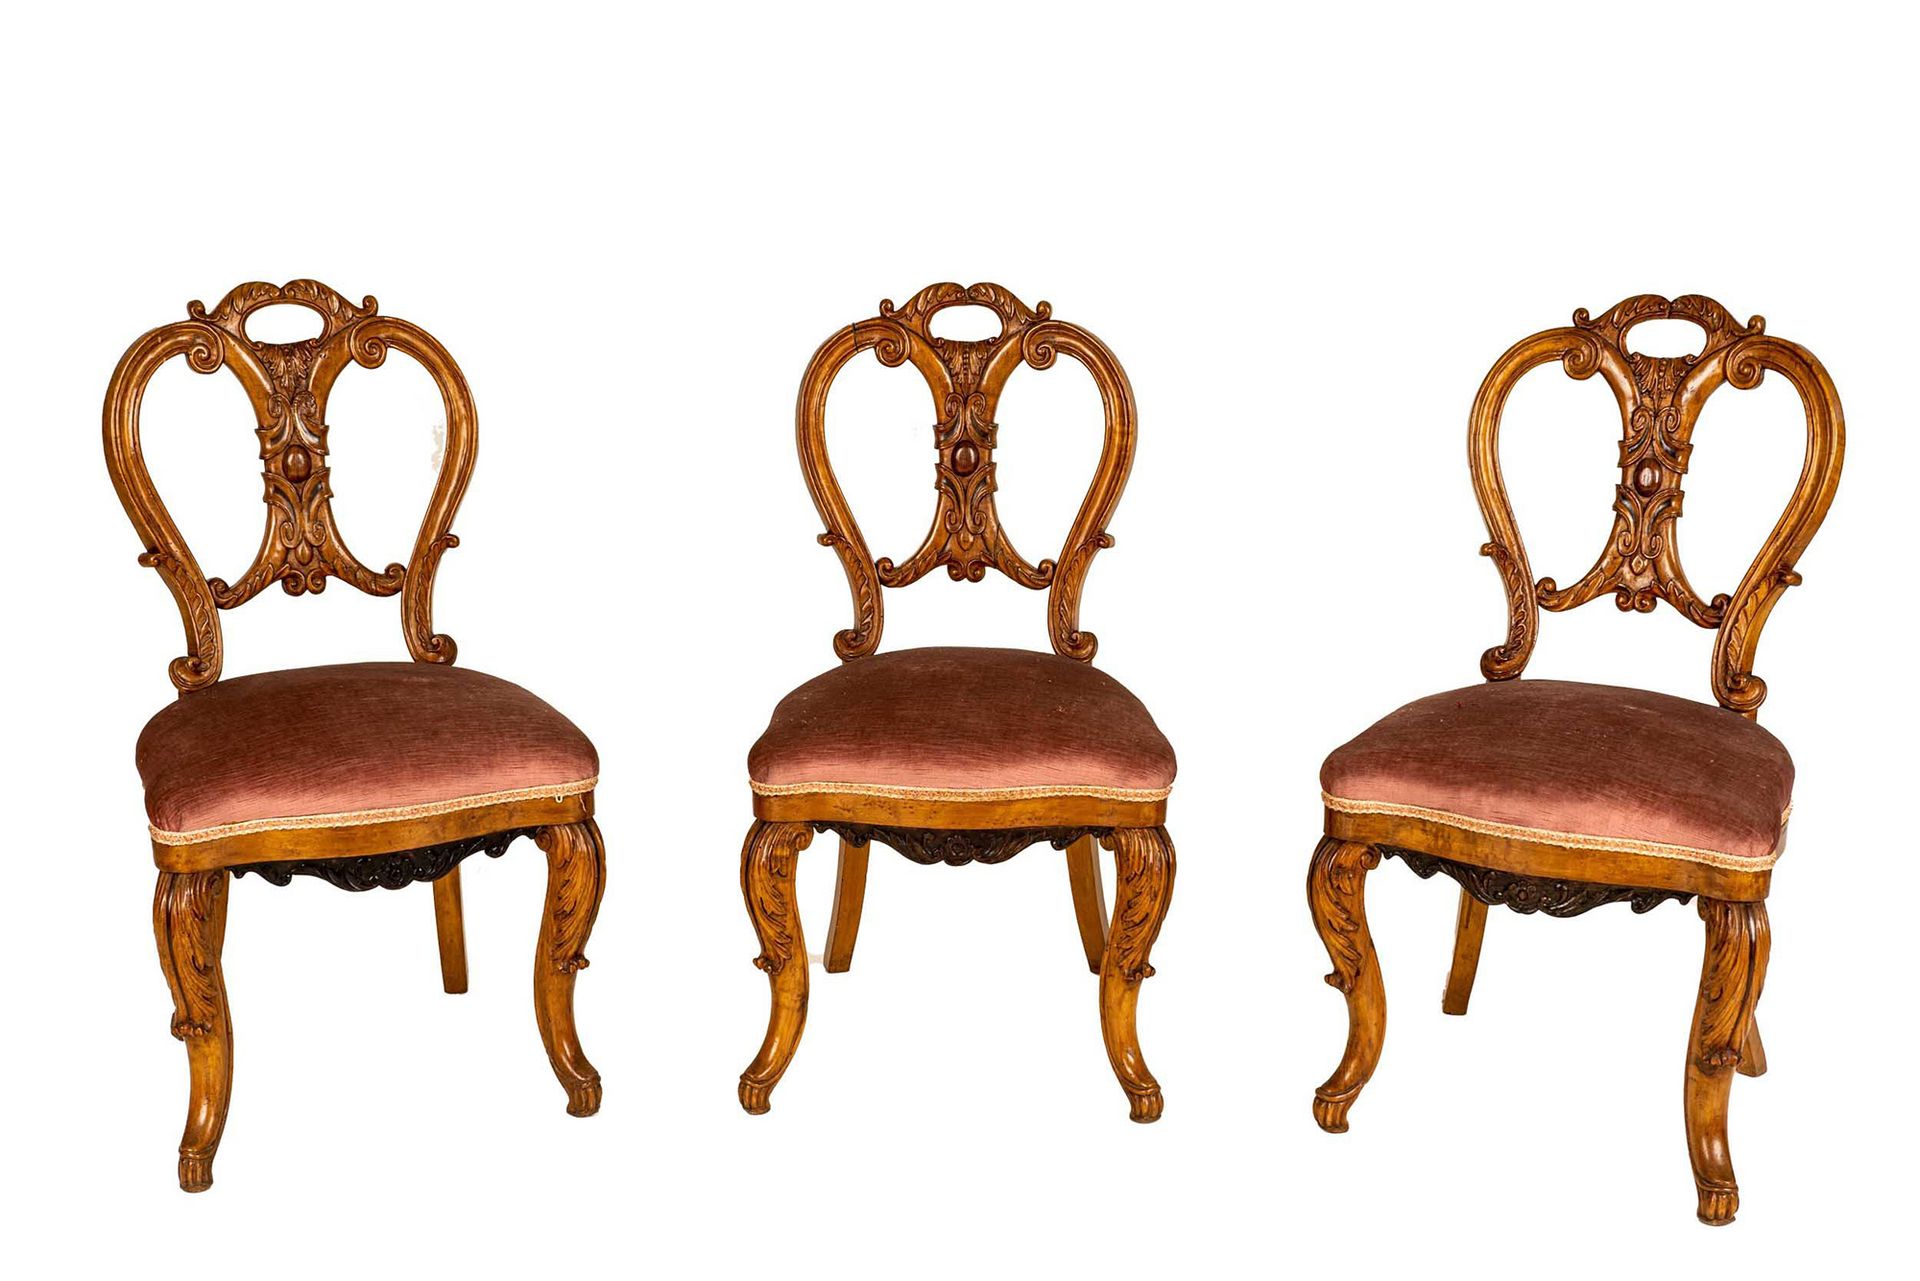 Null 四把椅子

19世纪末

红木雕花

高90厘米

有待恢复的